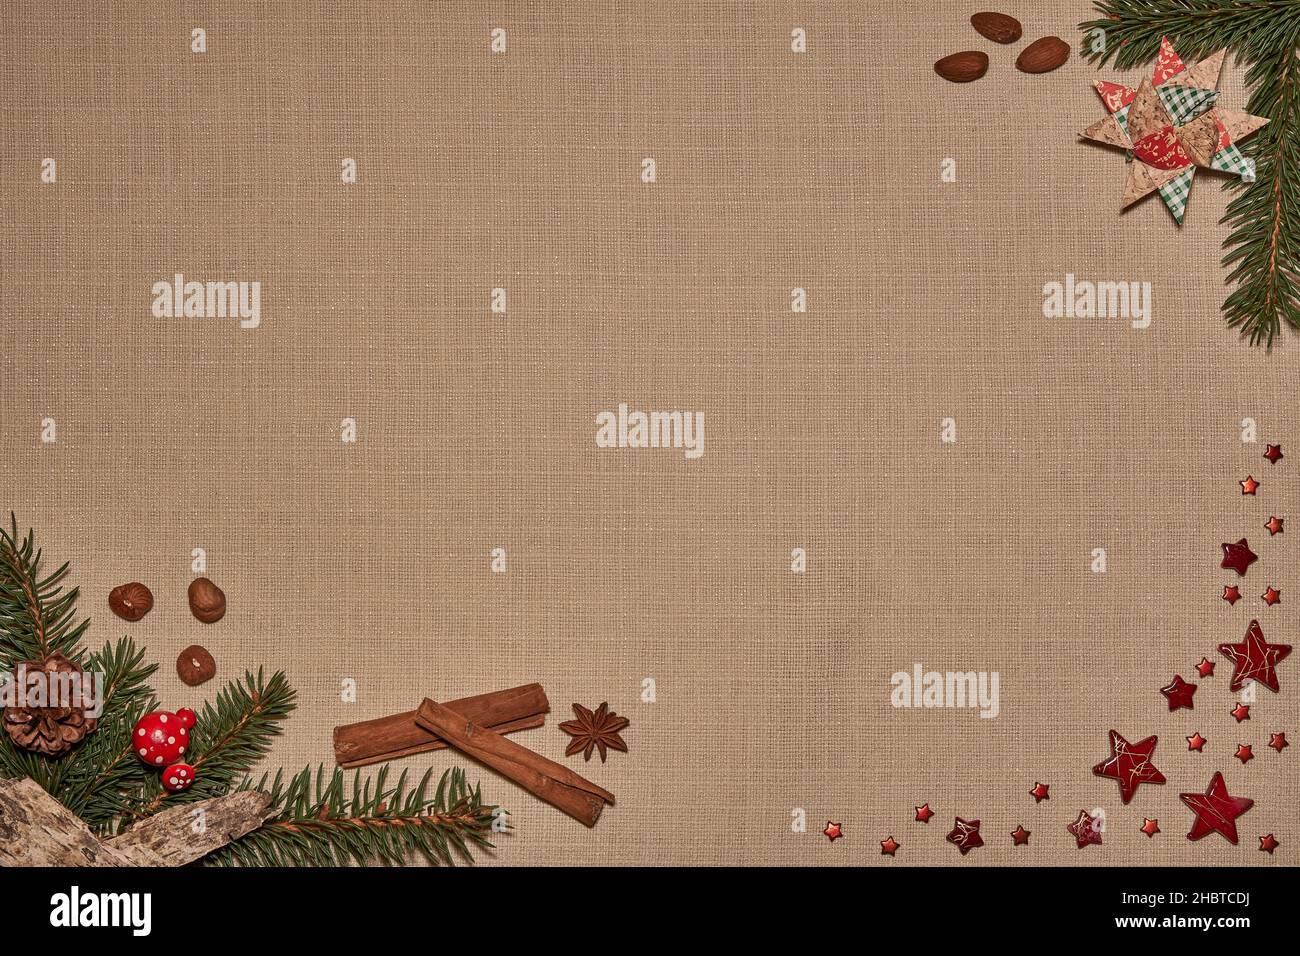 Weihnachtliches Hintergrundmotiv mit Tannenzweigen, Sternen, Nüssen, Mandeln und Gewürzen auf Textilgewebe Foto Stock